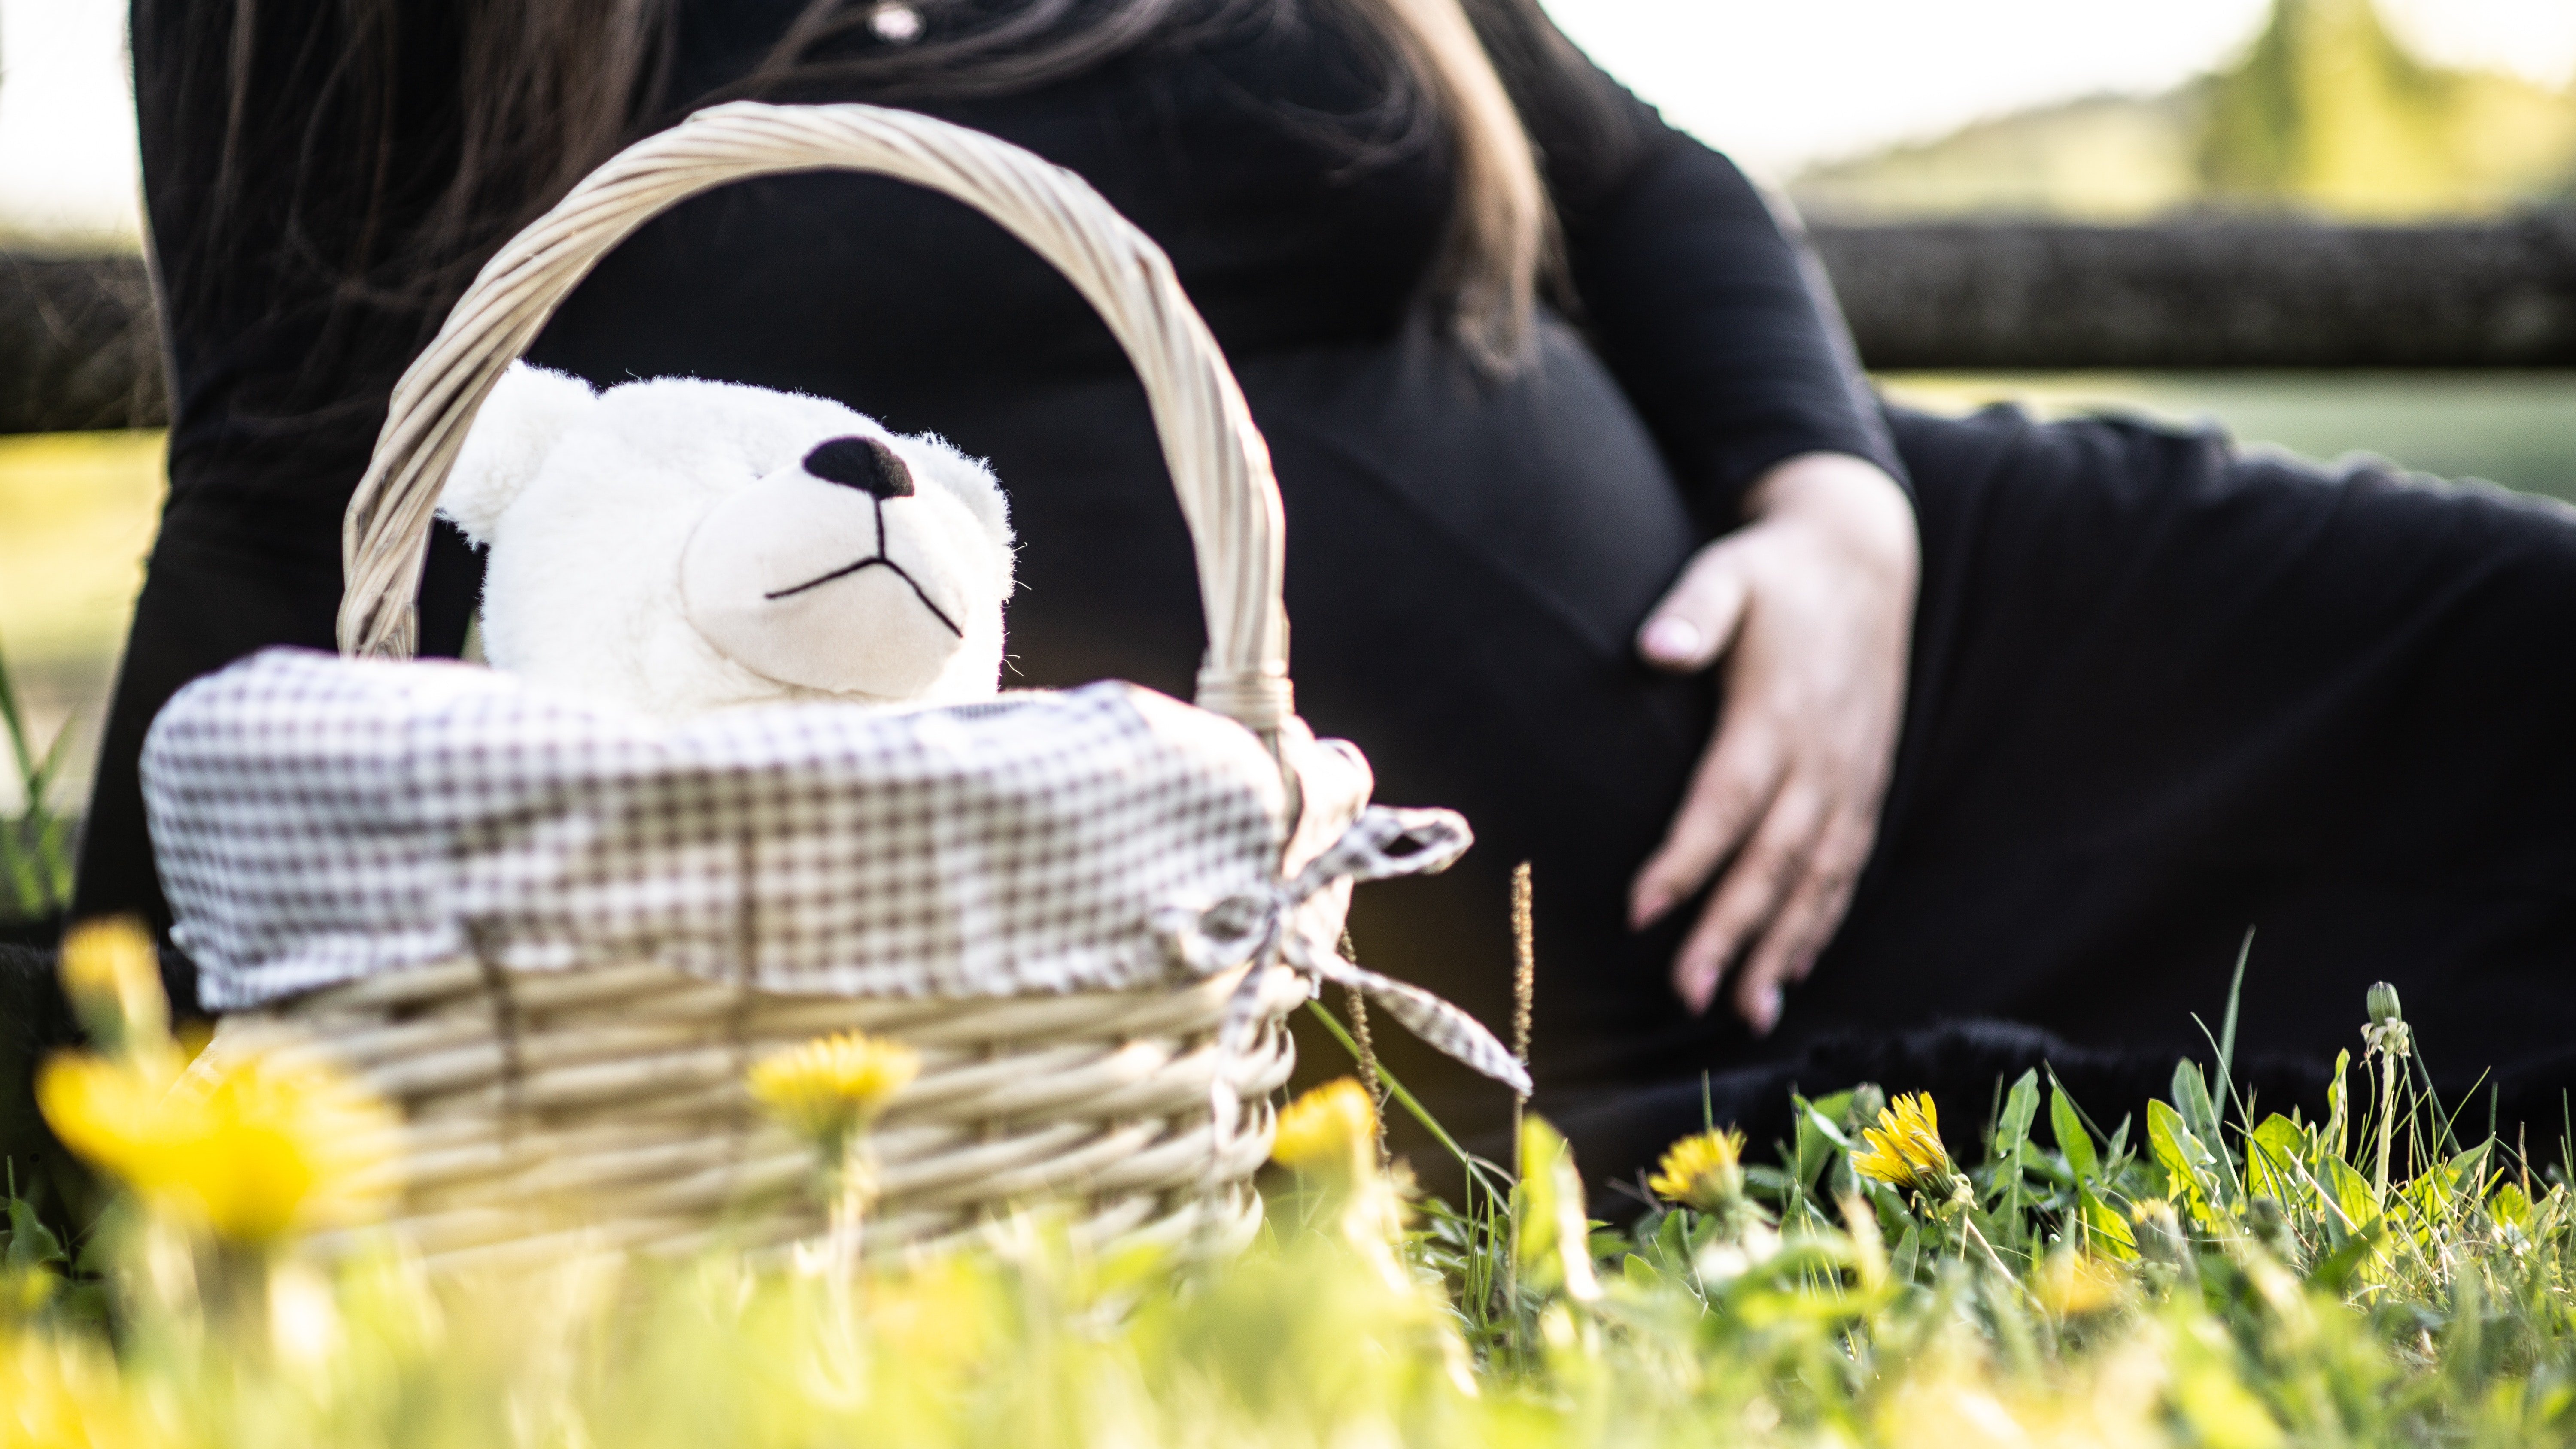 Schwangere Frau, die auf Gras nahe Picknickkorb sitzt. | Quelle: Pexels